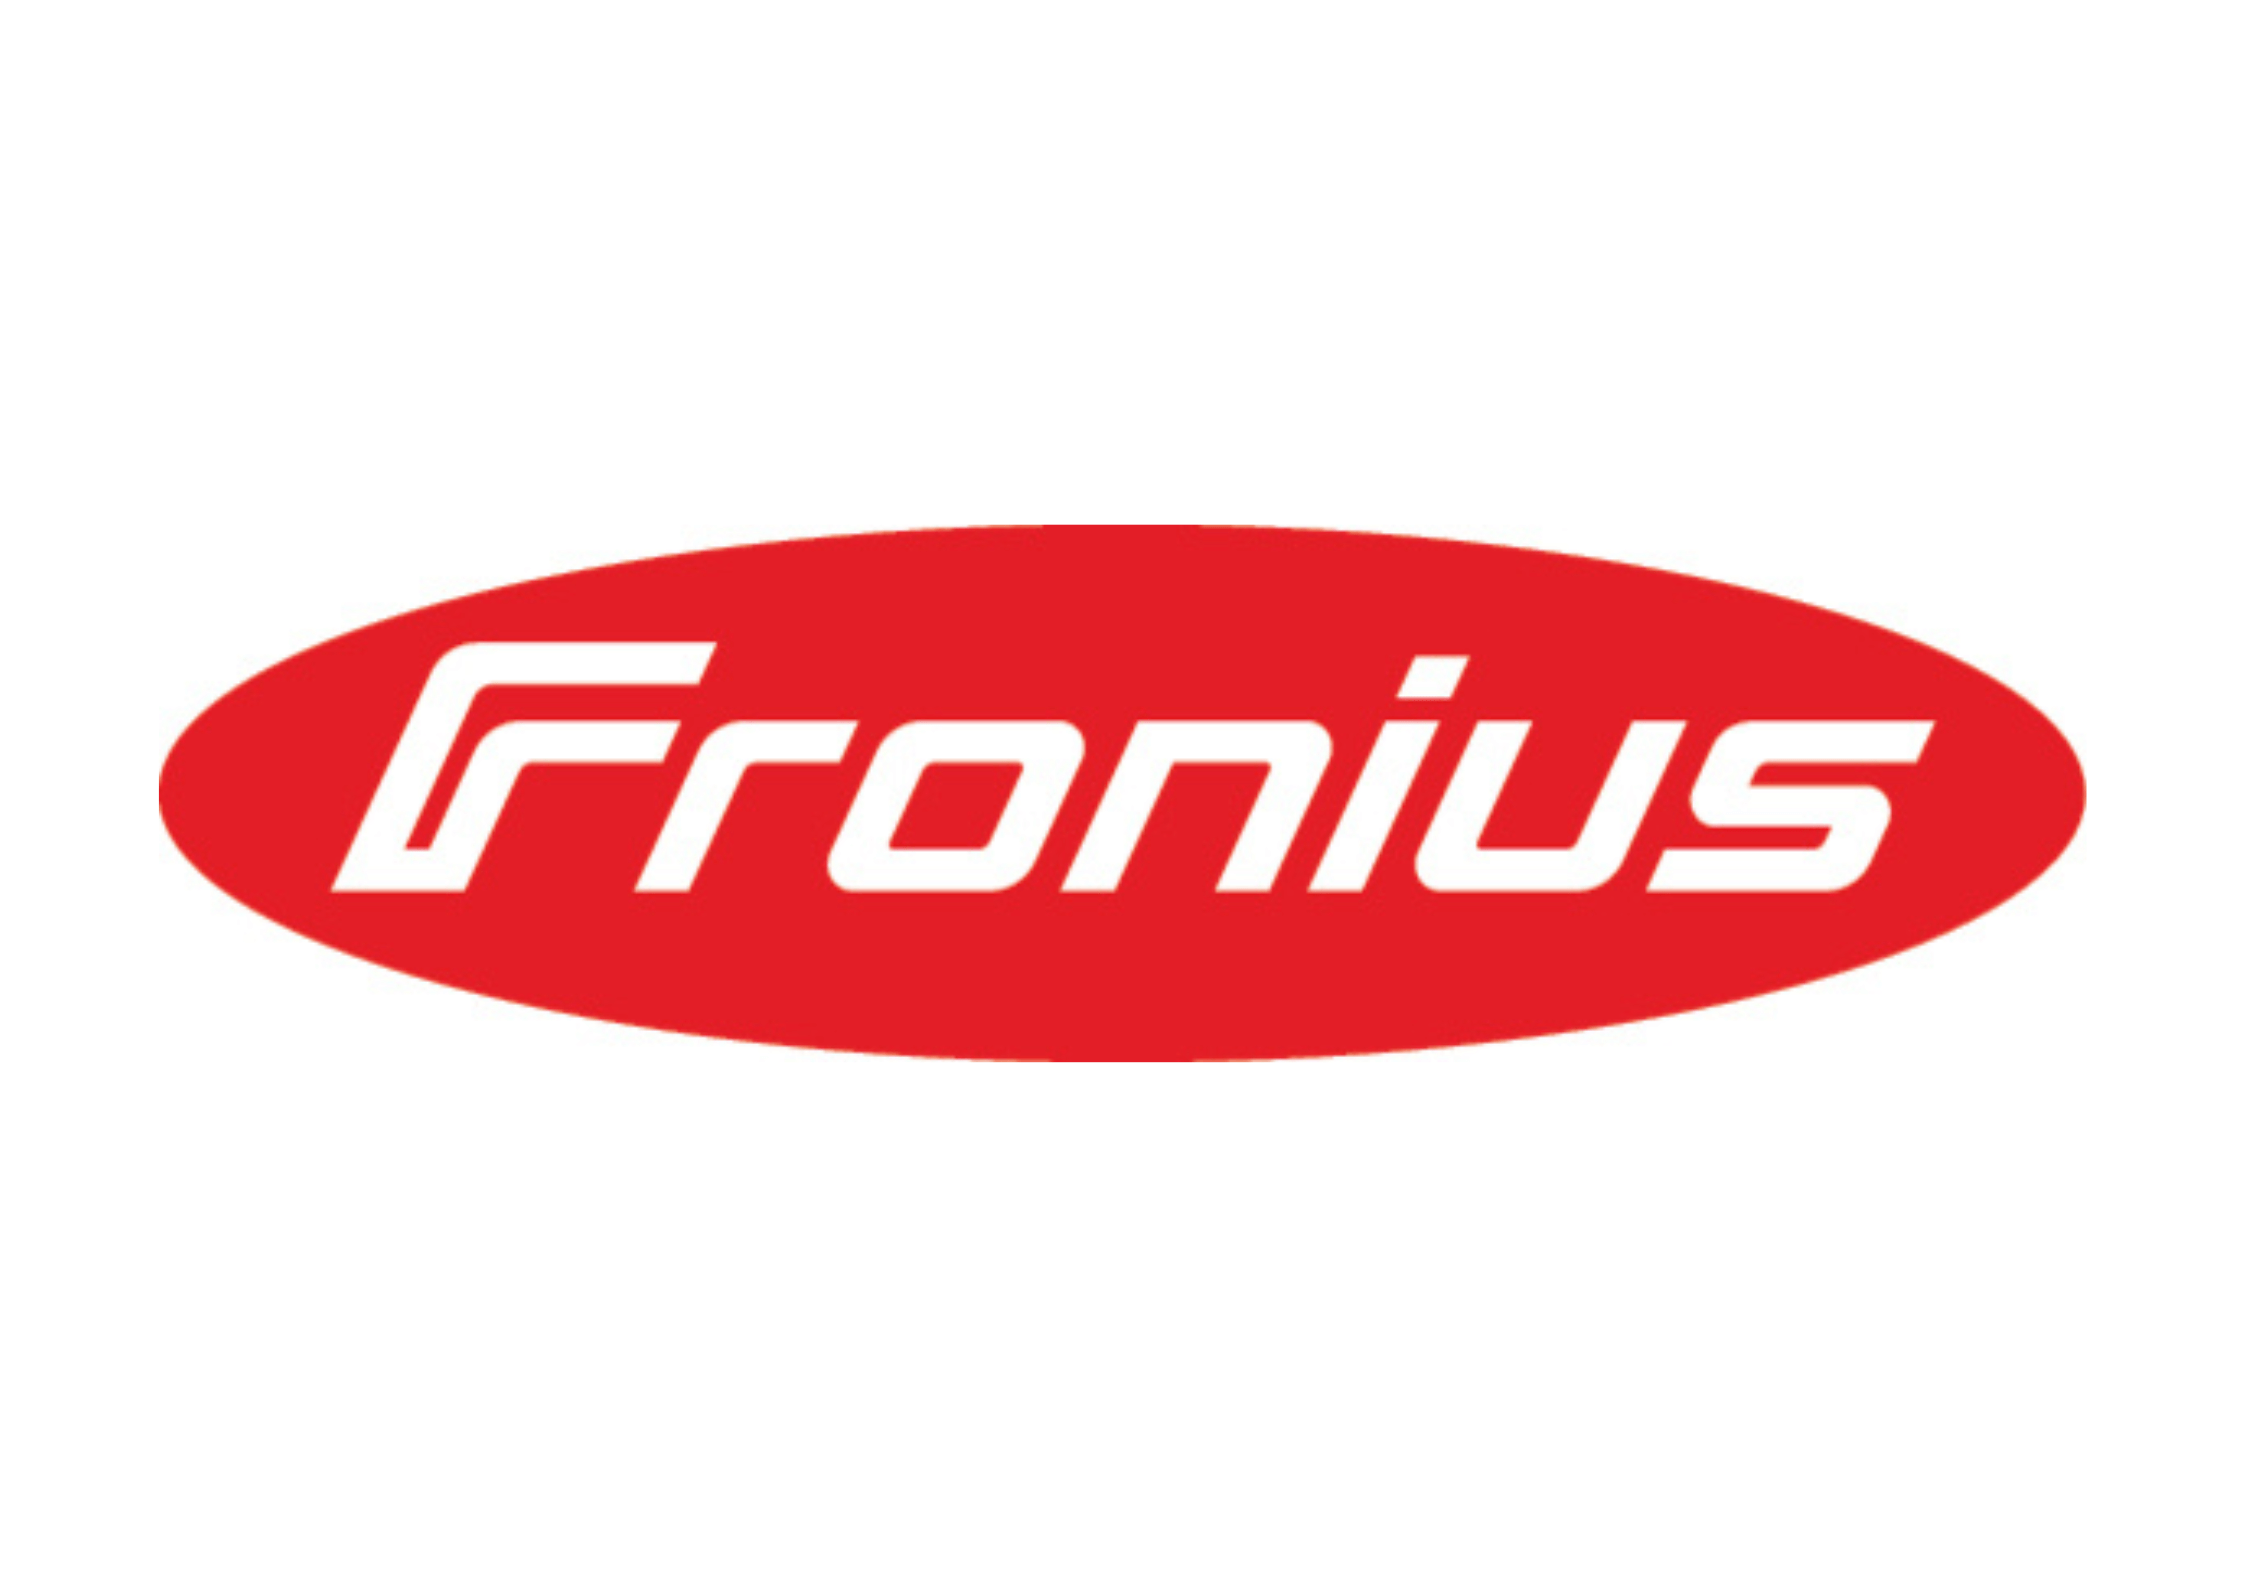 Logo Fronius